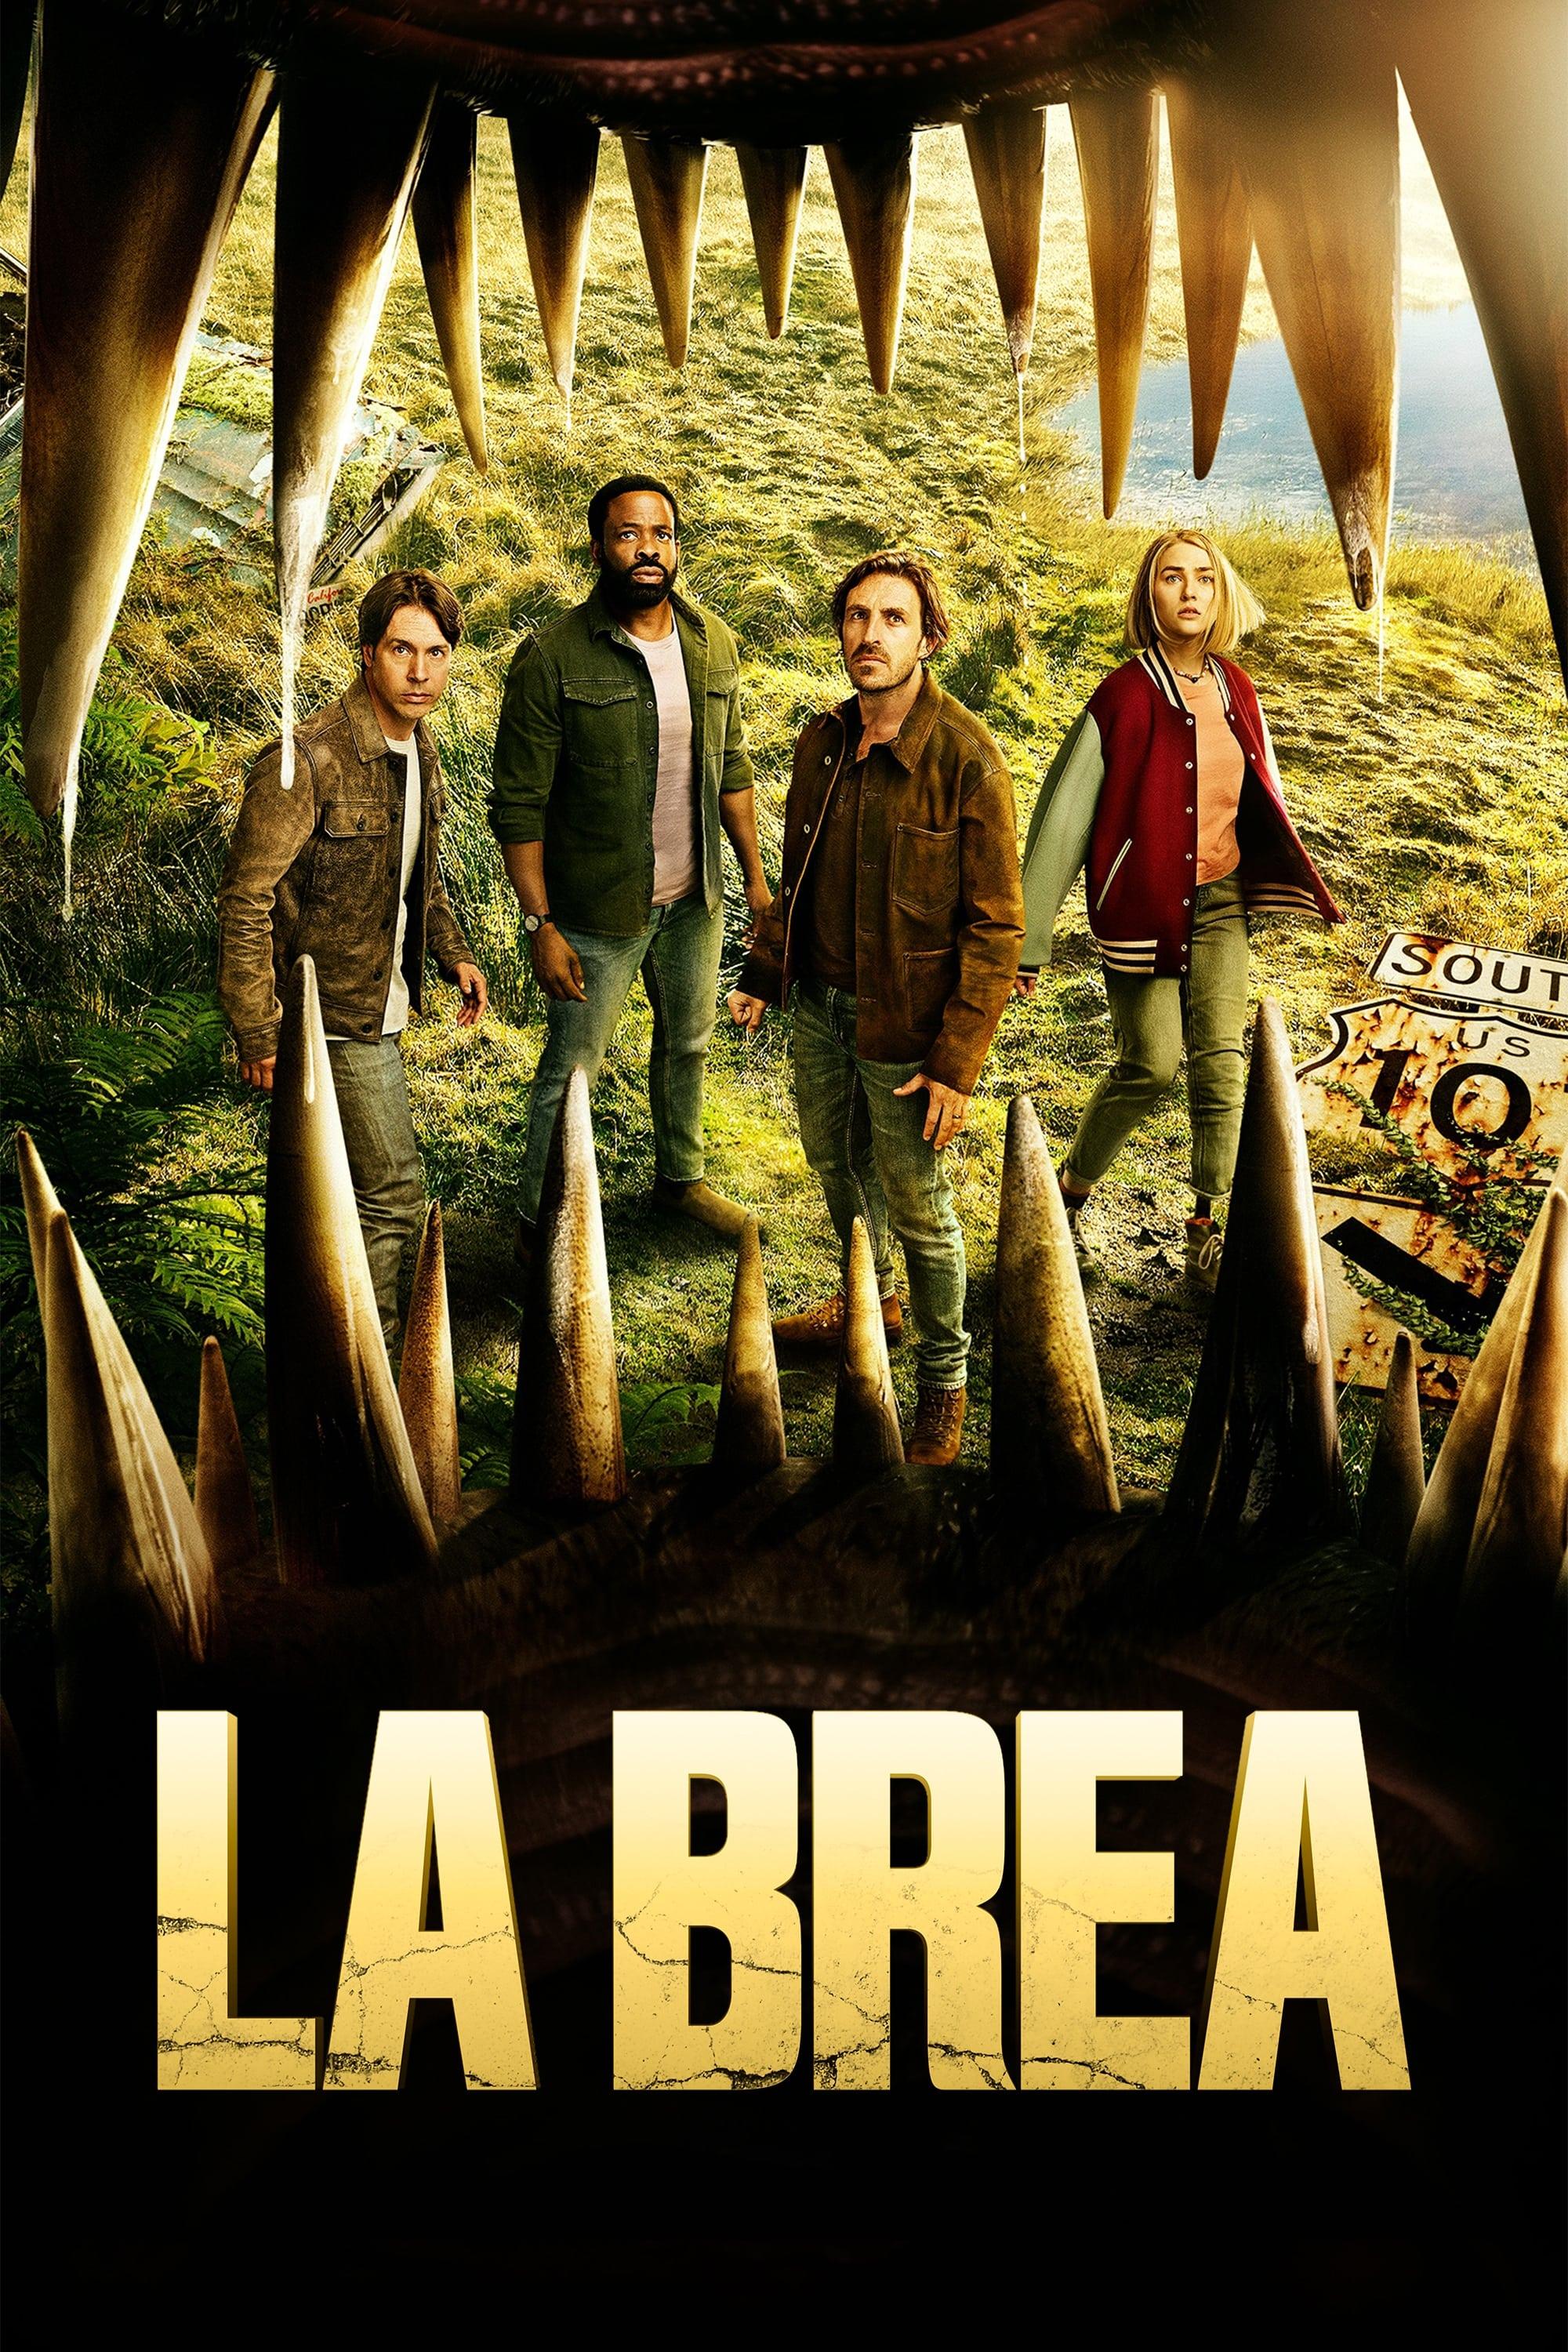 La Brea poster